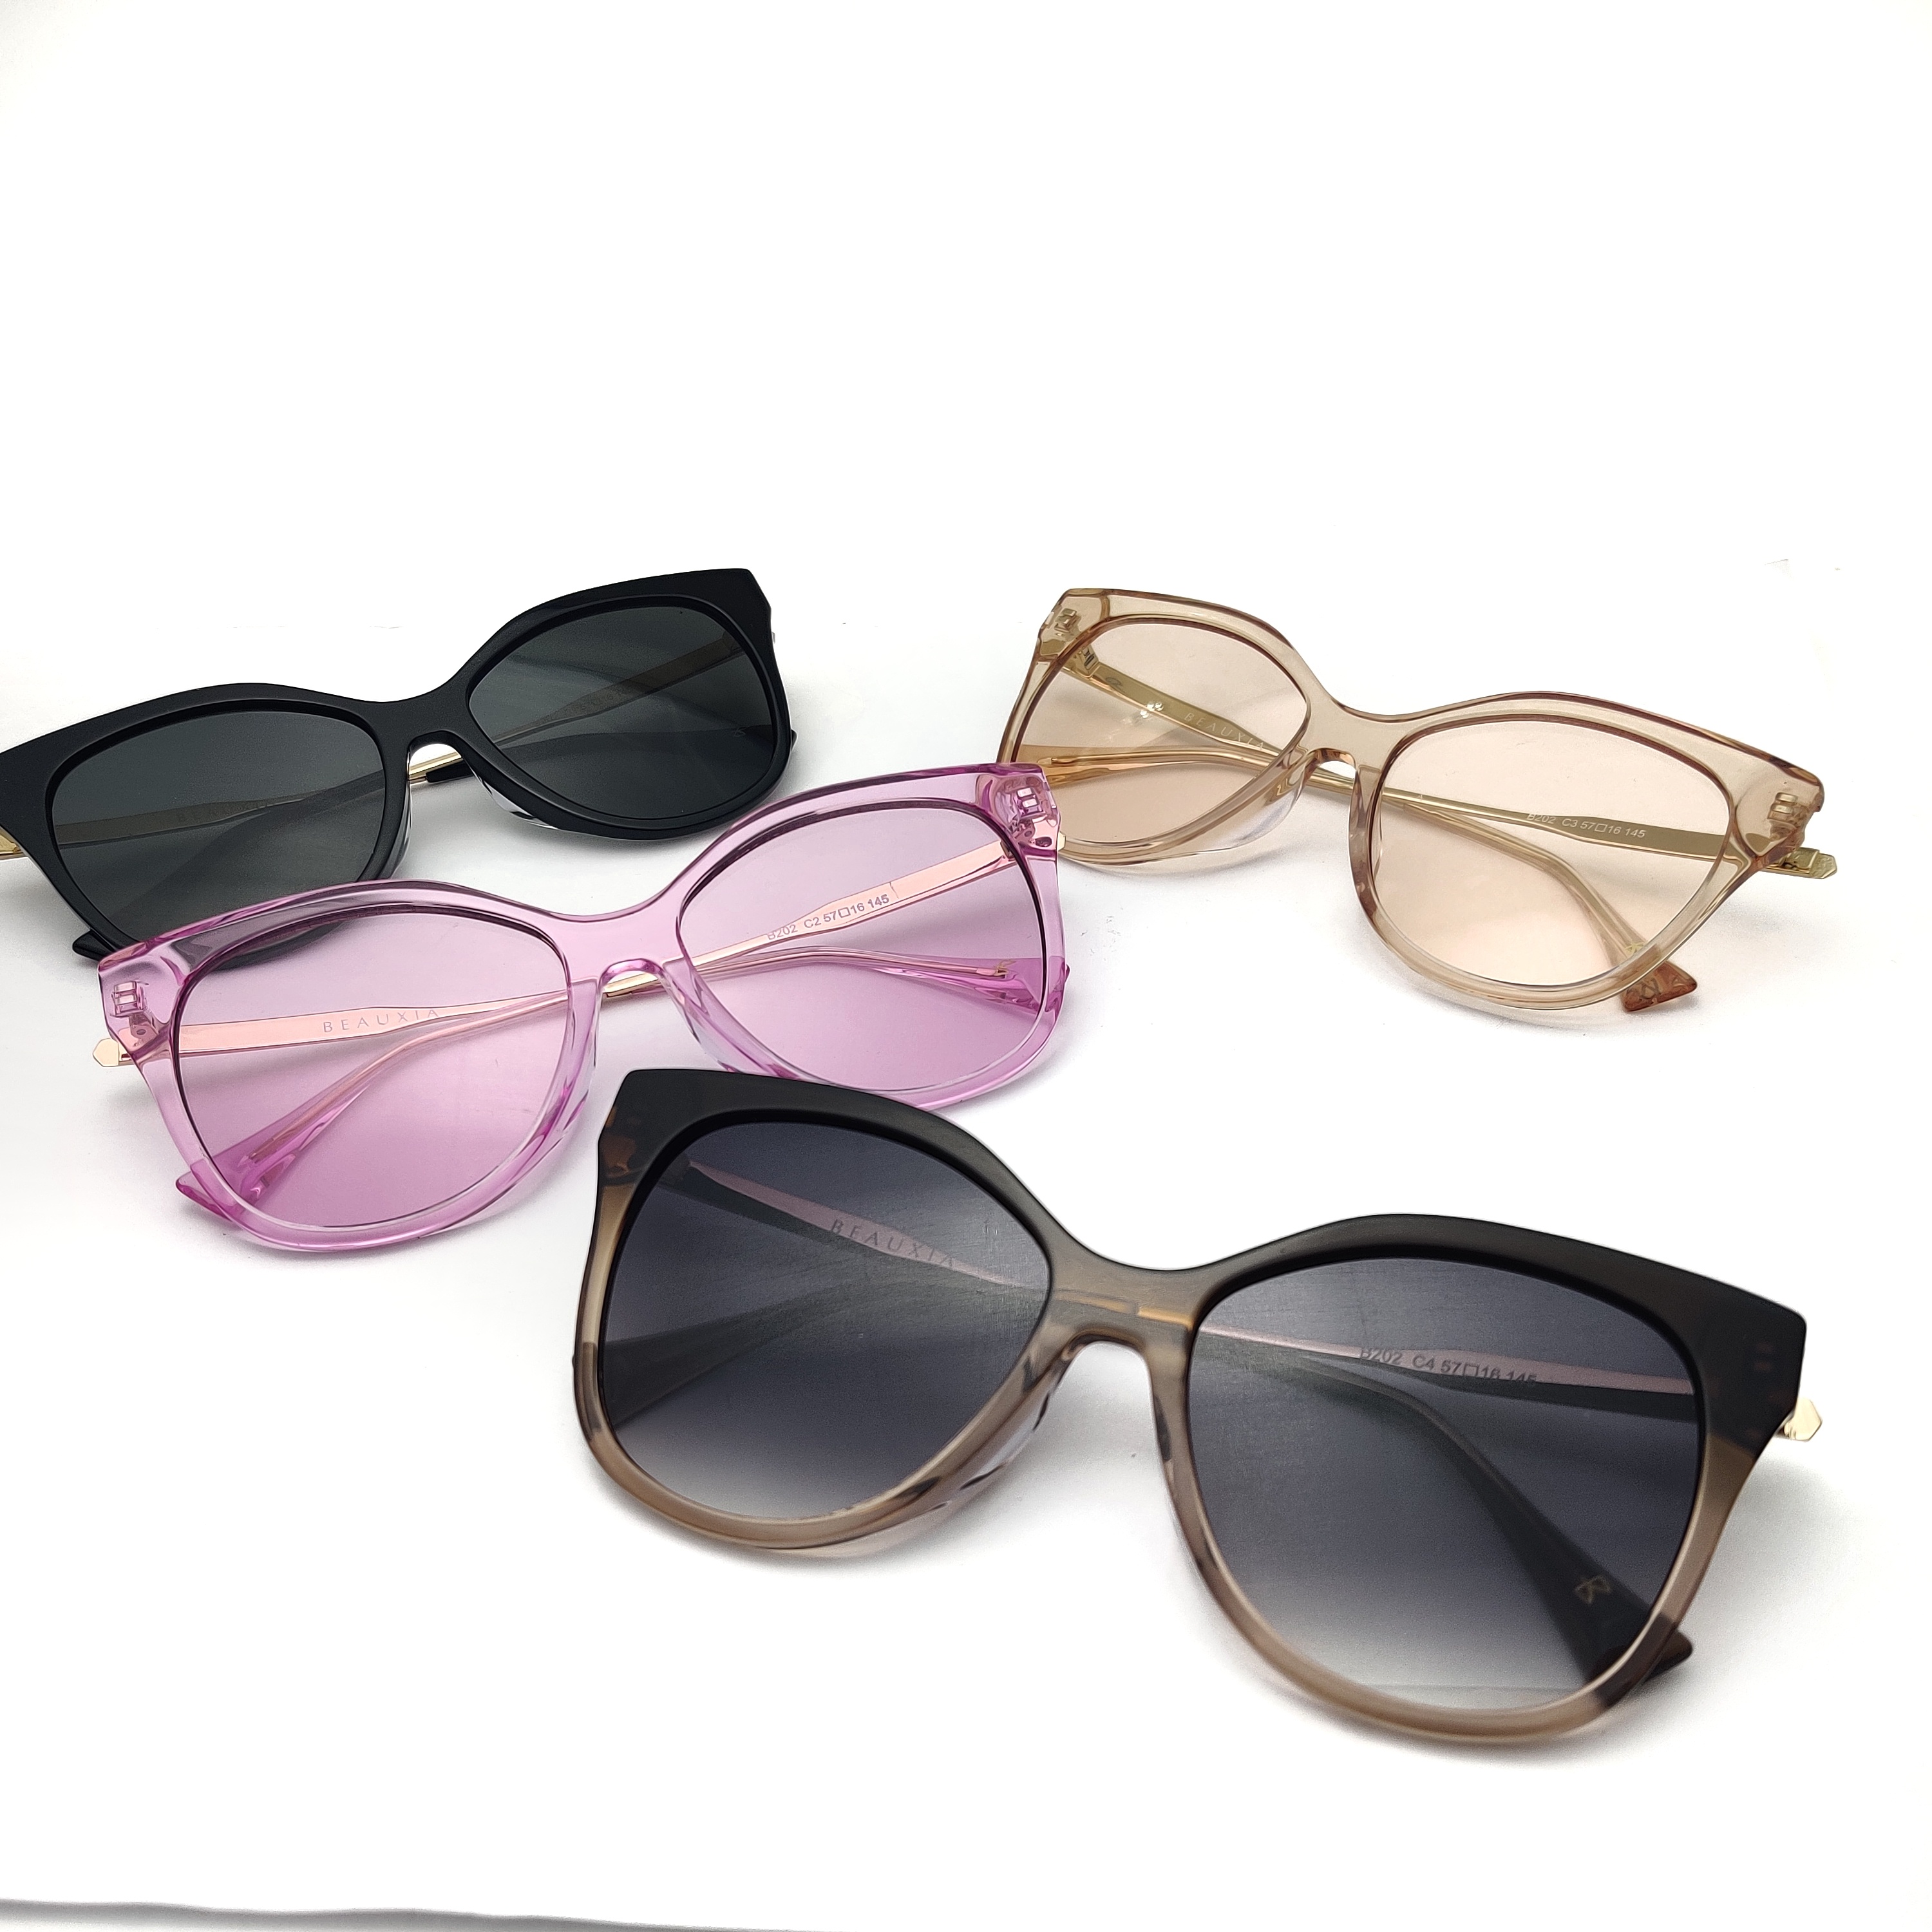 Personalice la fabricación de anteojos con montura de acetato de borde redondo, gafas de sol personalizadas para mujer